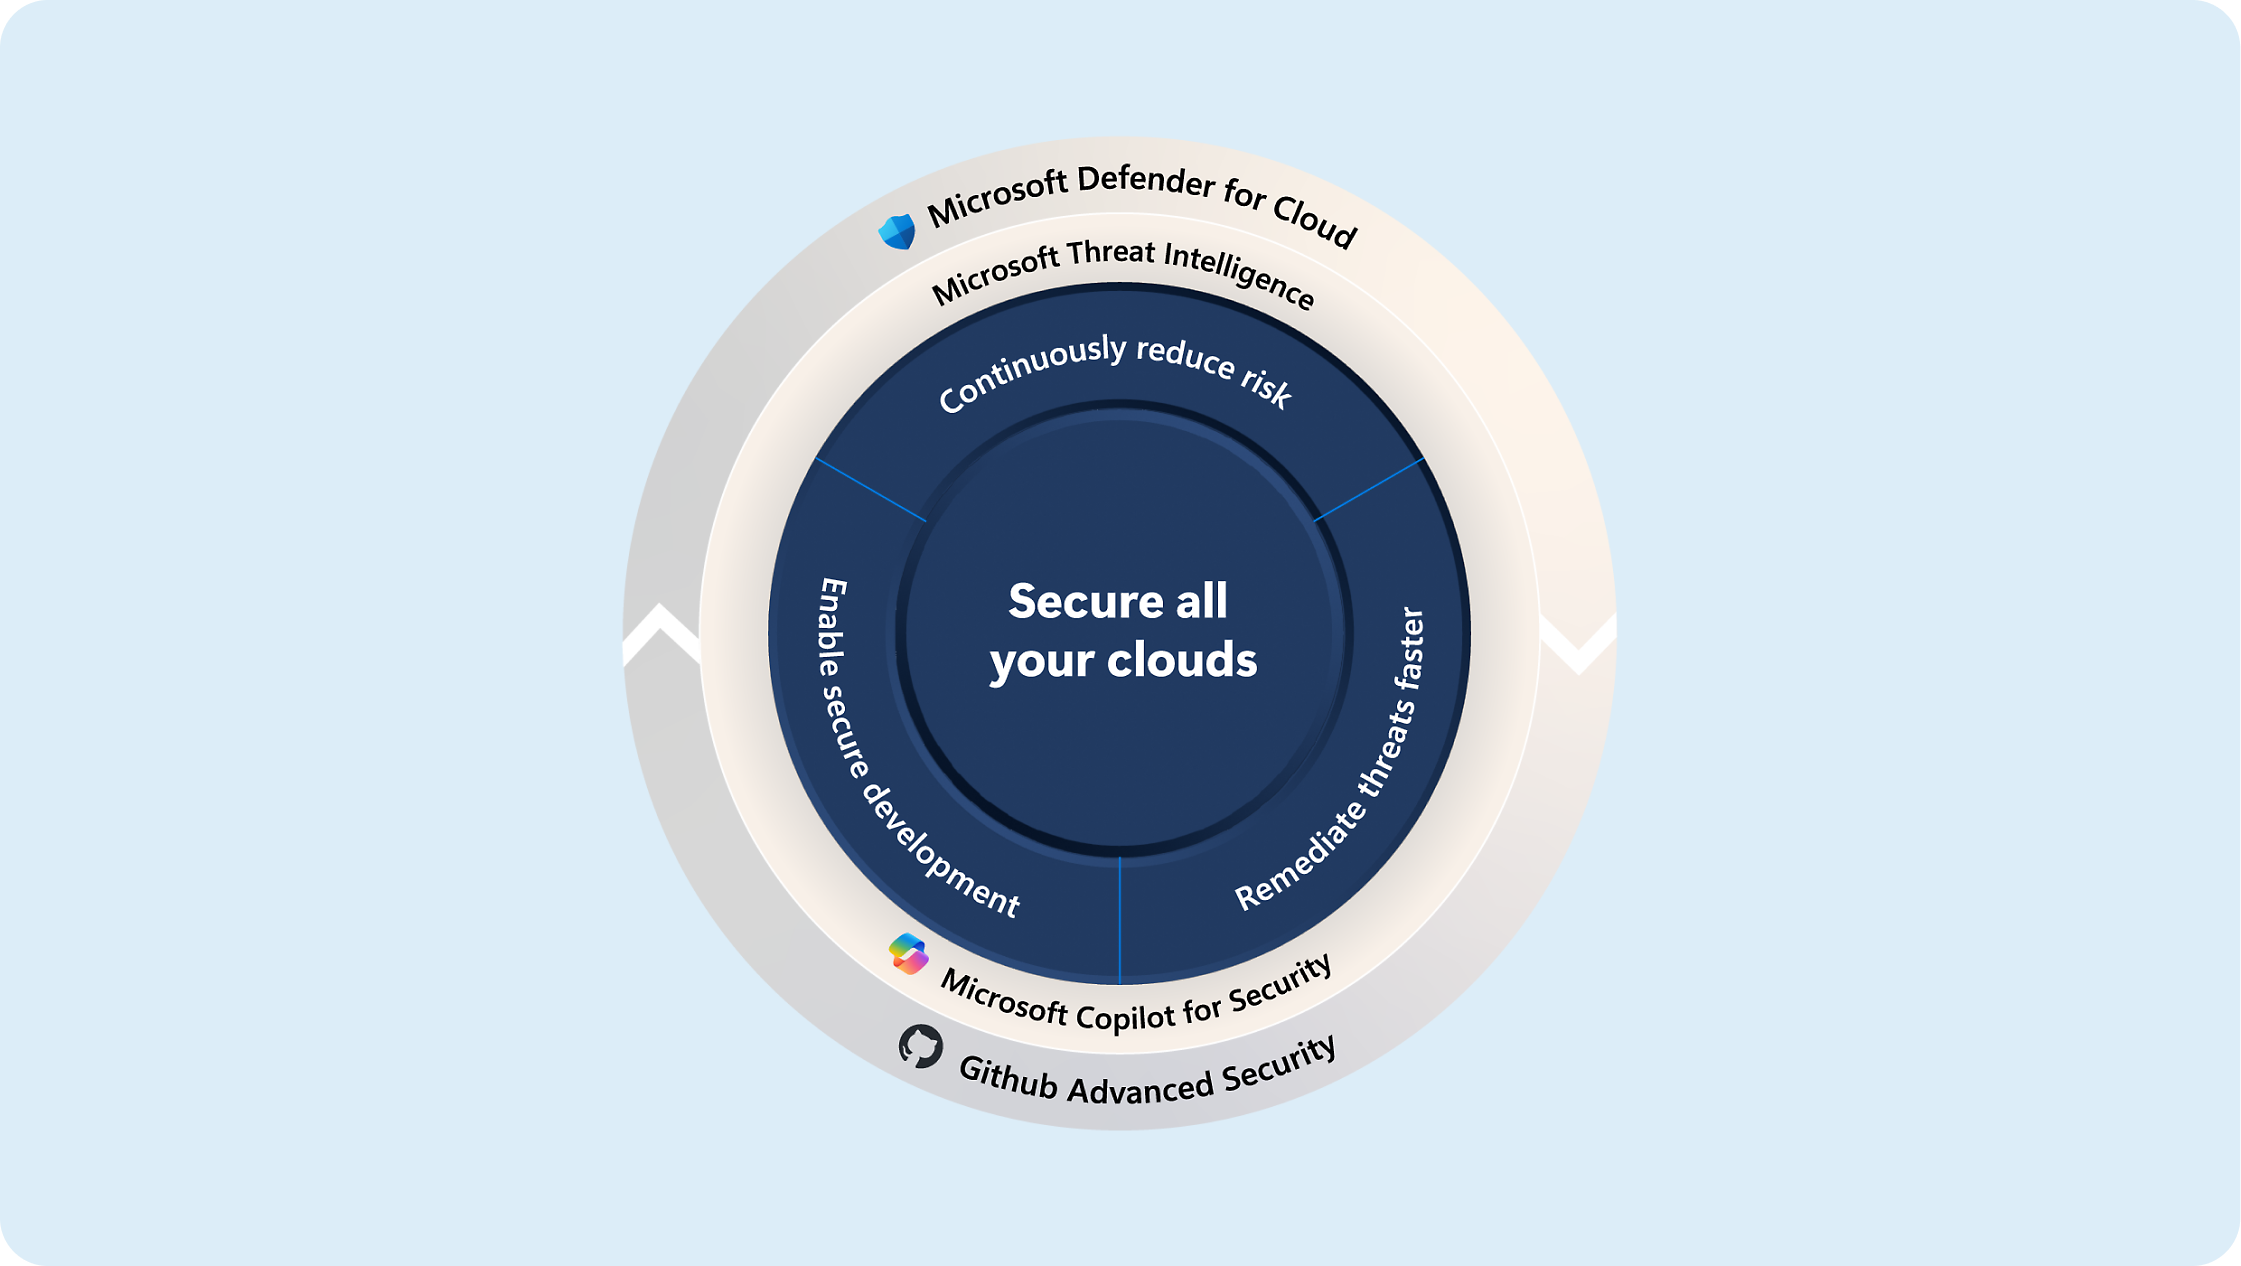 Схема, показывающая стратегии защиты облаков с помощью Microsoft Defender, аналитики угроз и Microsoft Copilot для безопасности